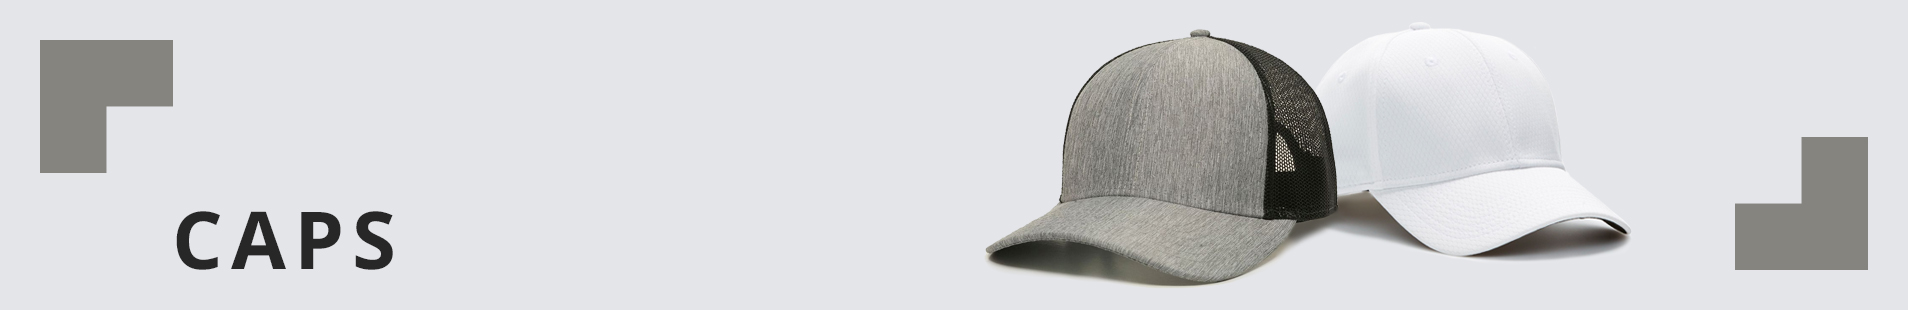 delta apparel caps outdoor cap callaway